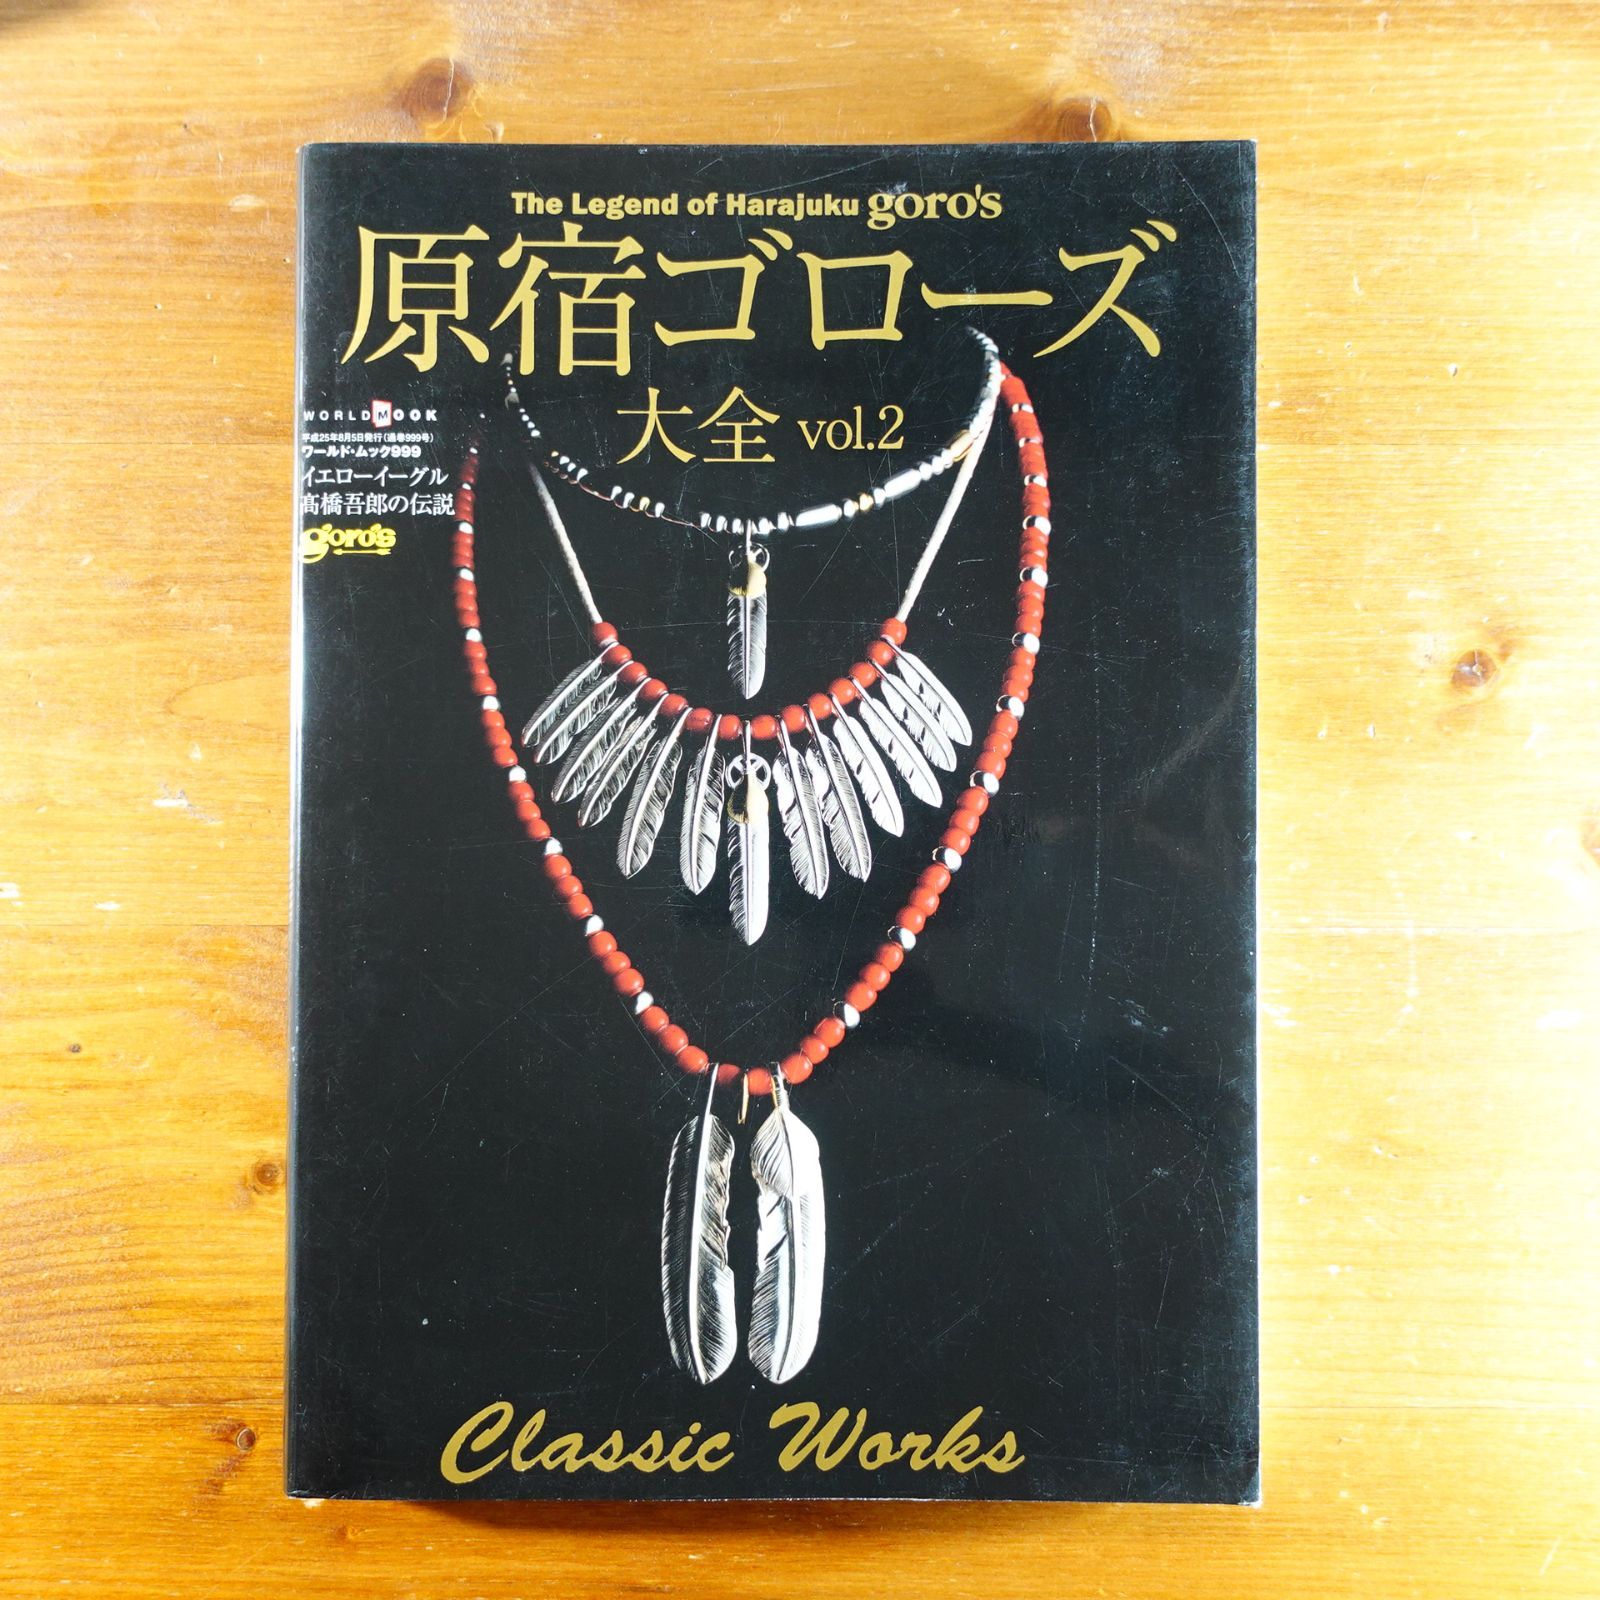 原宿ゴローズ大全vol.2(ワールド・ムック999) (ワールド・ムック 999 